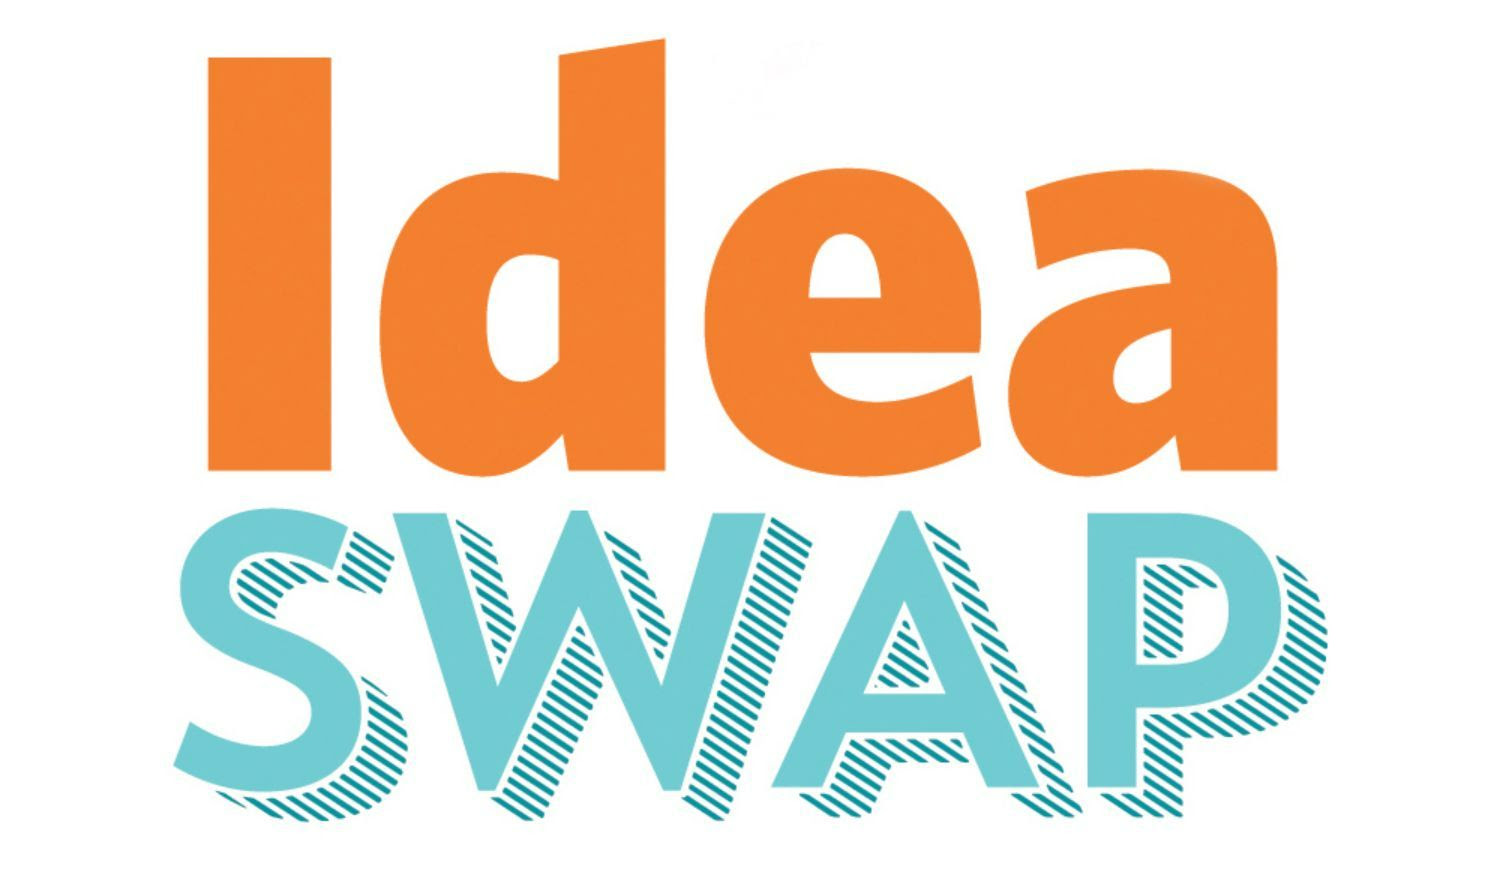 "Idea" written in orange over "swap" written in light blue.